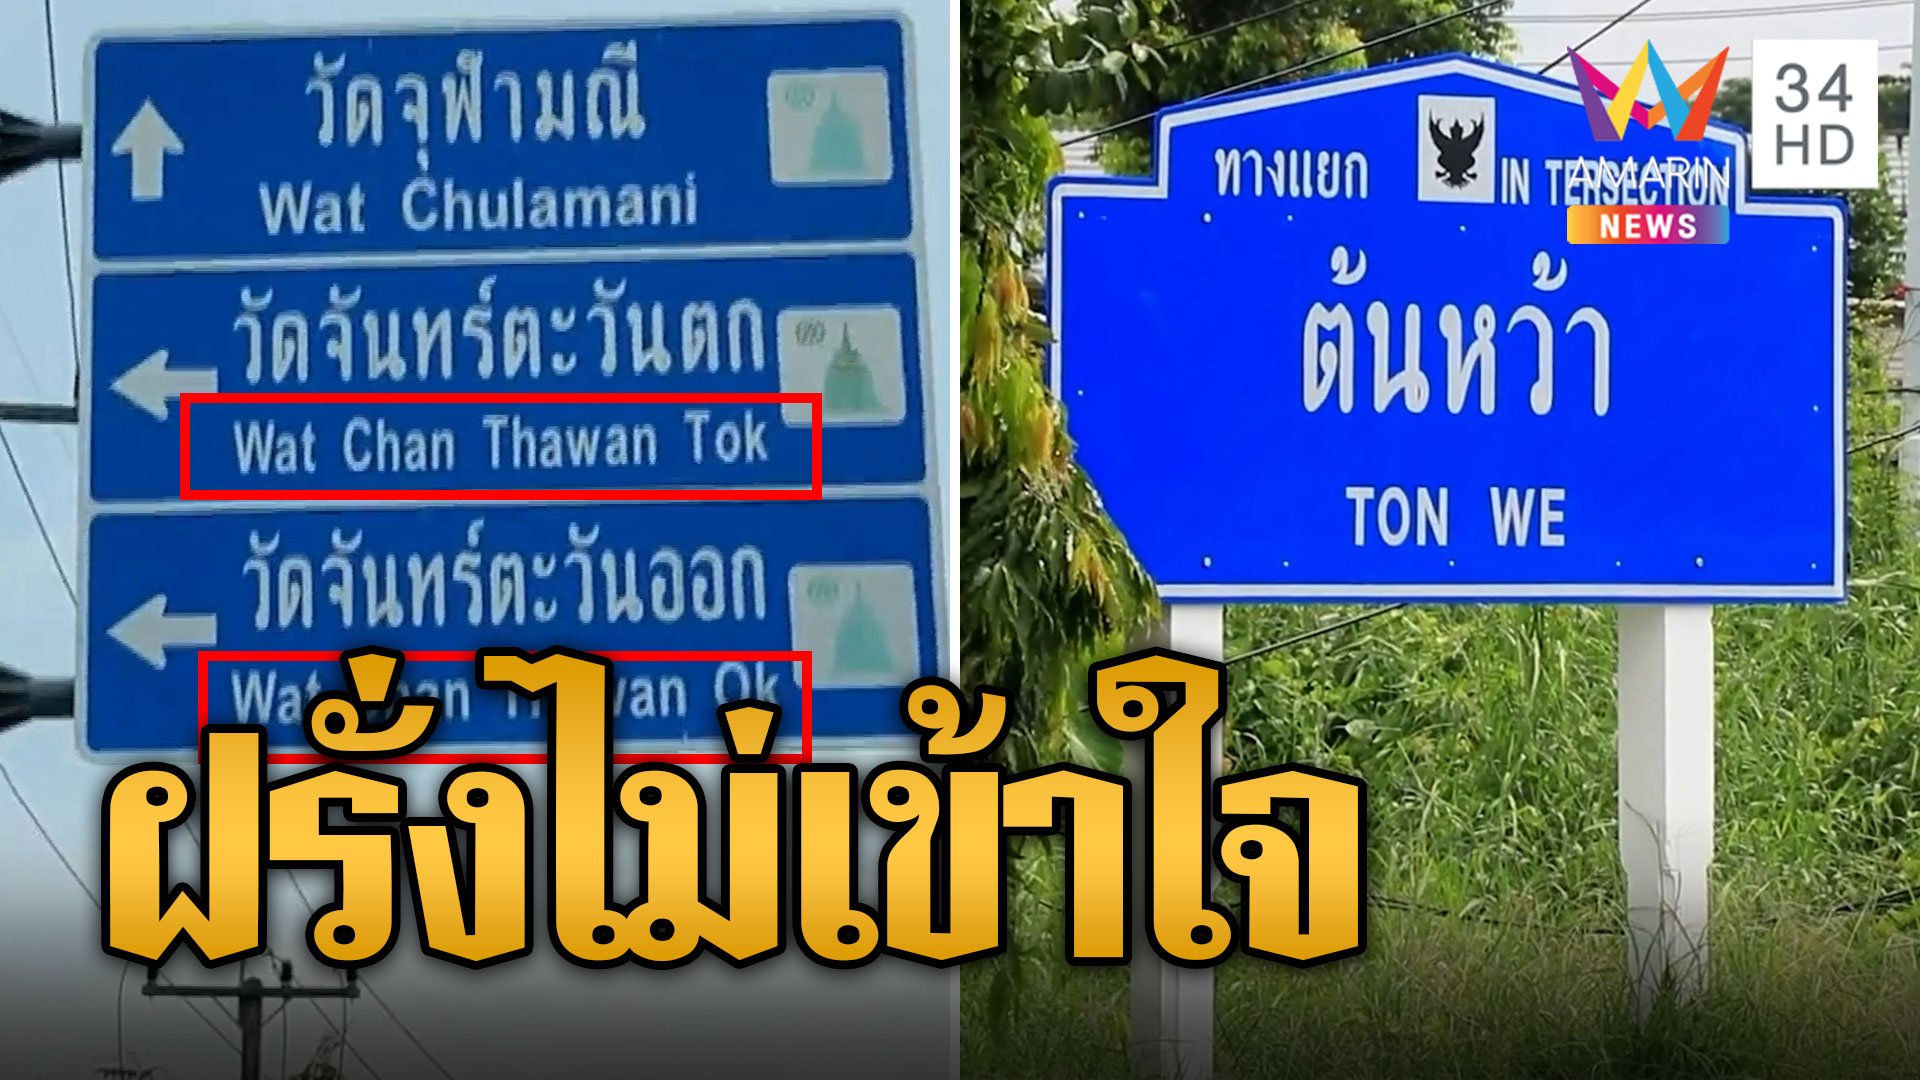 ฝรั่งมึนตึ๊บ! ป้ายบอกทางวัดจันทร์ตะวันออก "Wat Chan Thawan Ok" | ข่าวเที่ยงอมรินทร์ | 26 ก.ย. 66 | AMARIN TVHD34